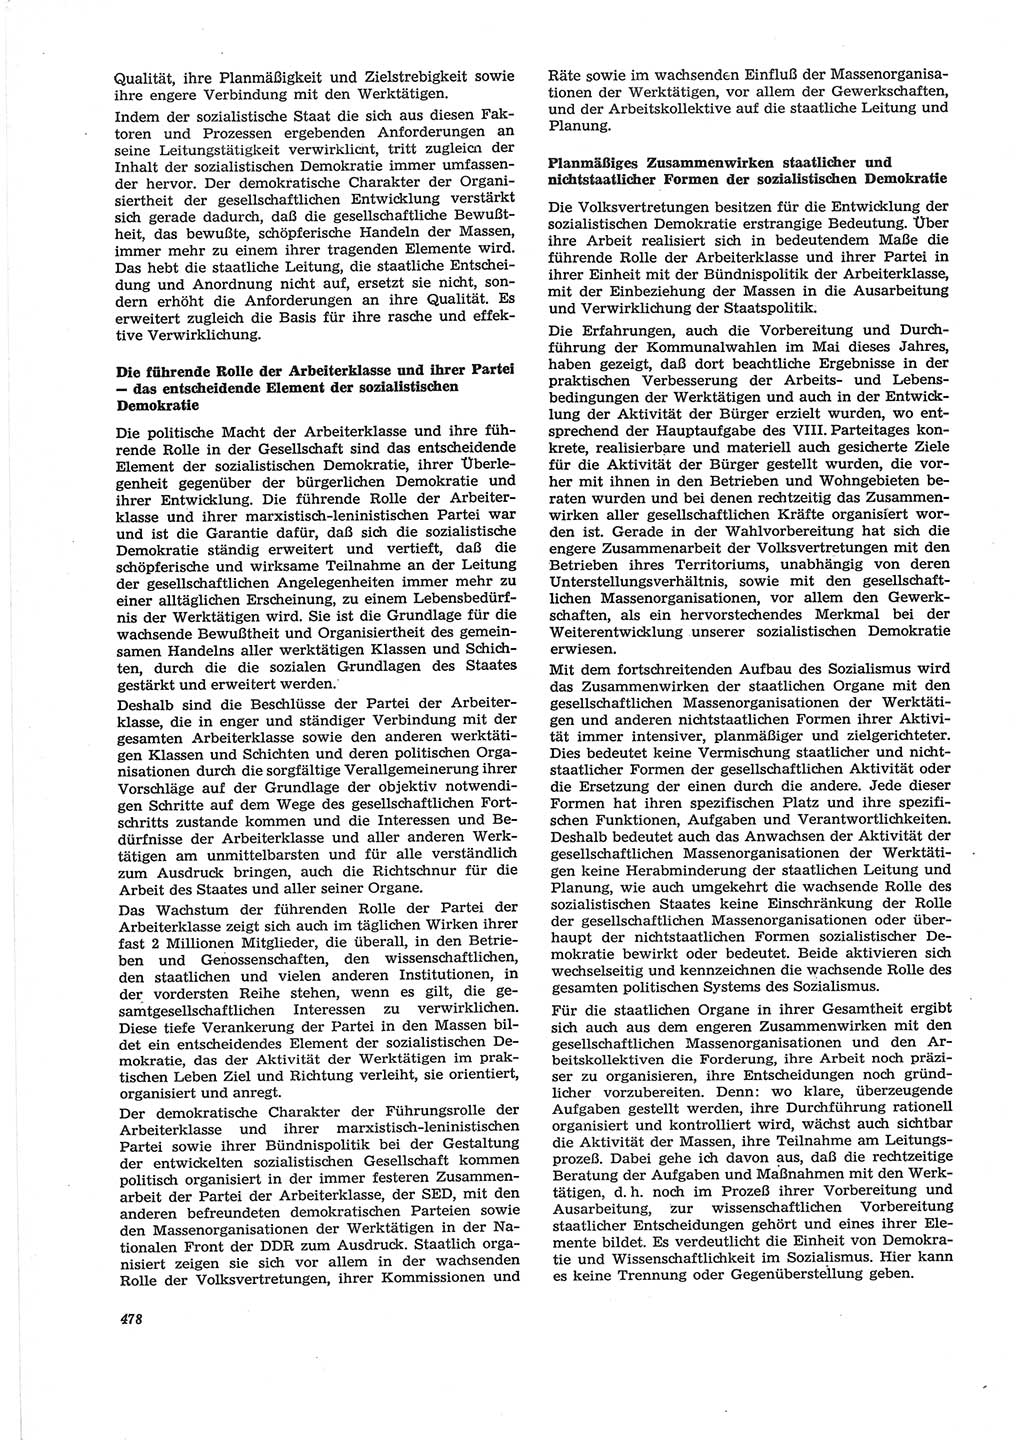 Neue Justiz (NJ), Zeitschrift für Recht und Rechtswissenschaft [Deutsche Demokratische Republik (DDR)], 28. Jahrgang 1974, Seite 478 (NJ DDR 1974, S. 478)